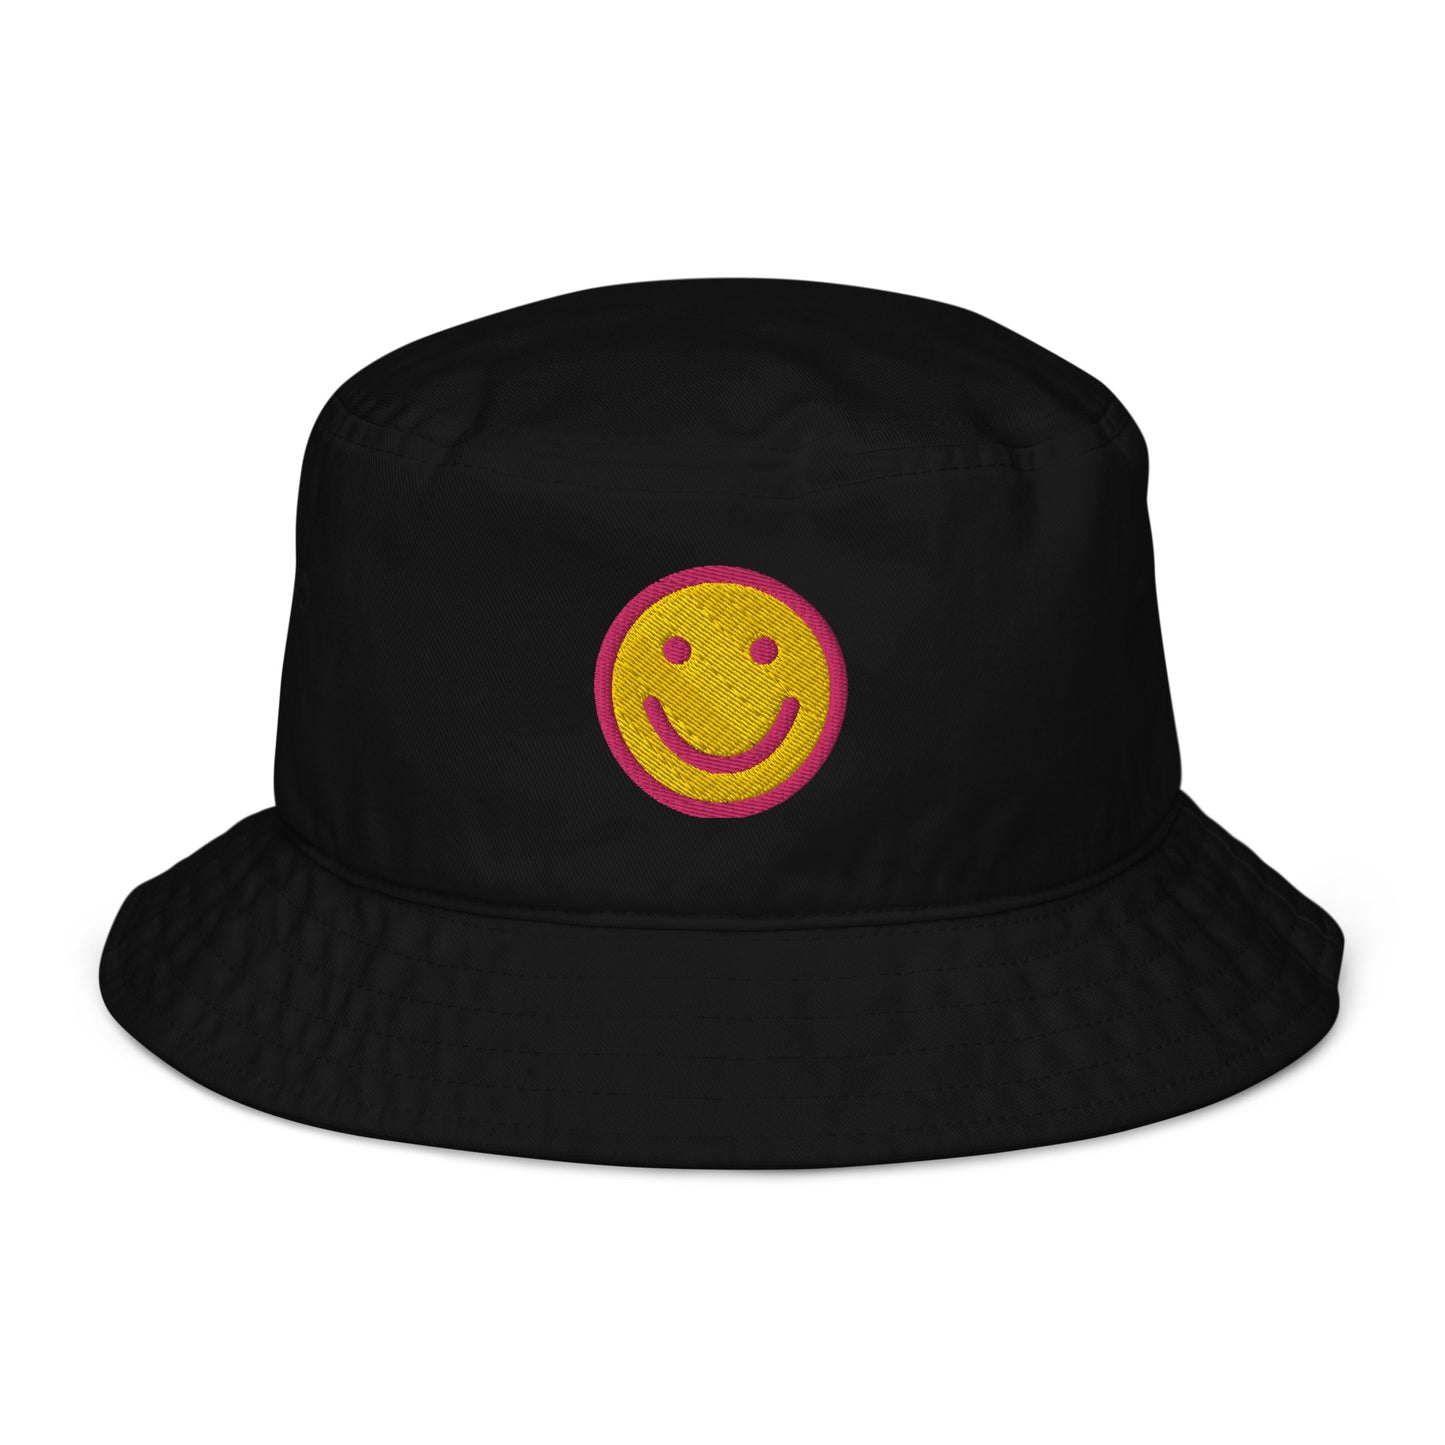 Happy Smiley Face Organic bucket hat